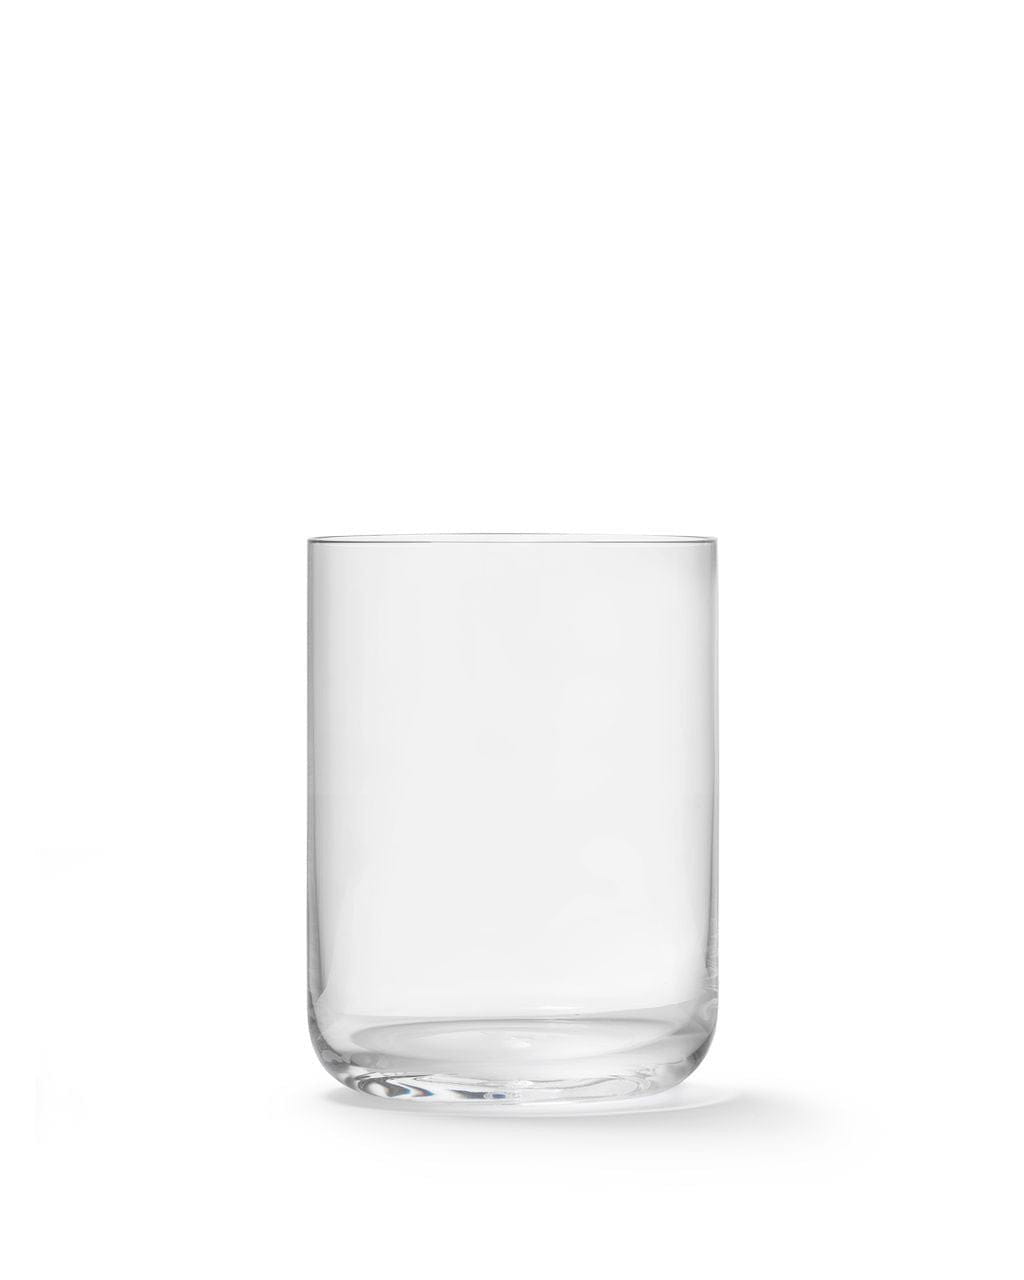 Aarke Nesting Glas Sæt-Glas og kopper-Aarke-7350091792937-1205689-AAR-Allbuy